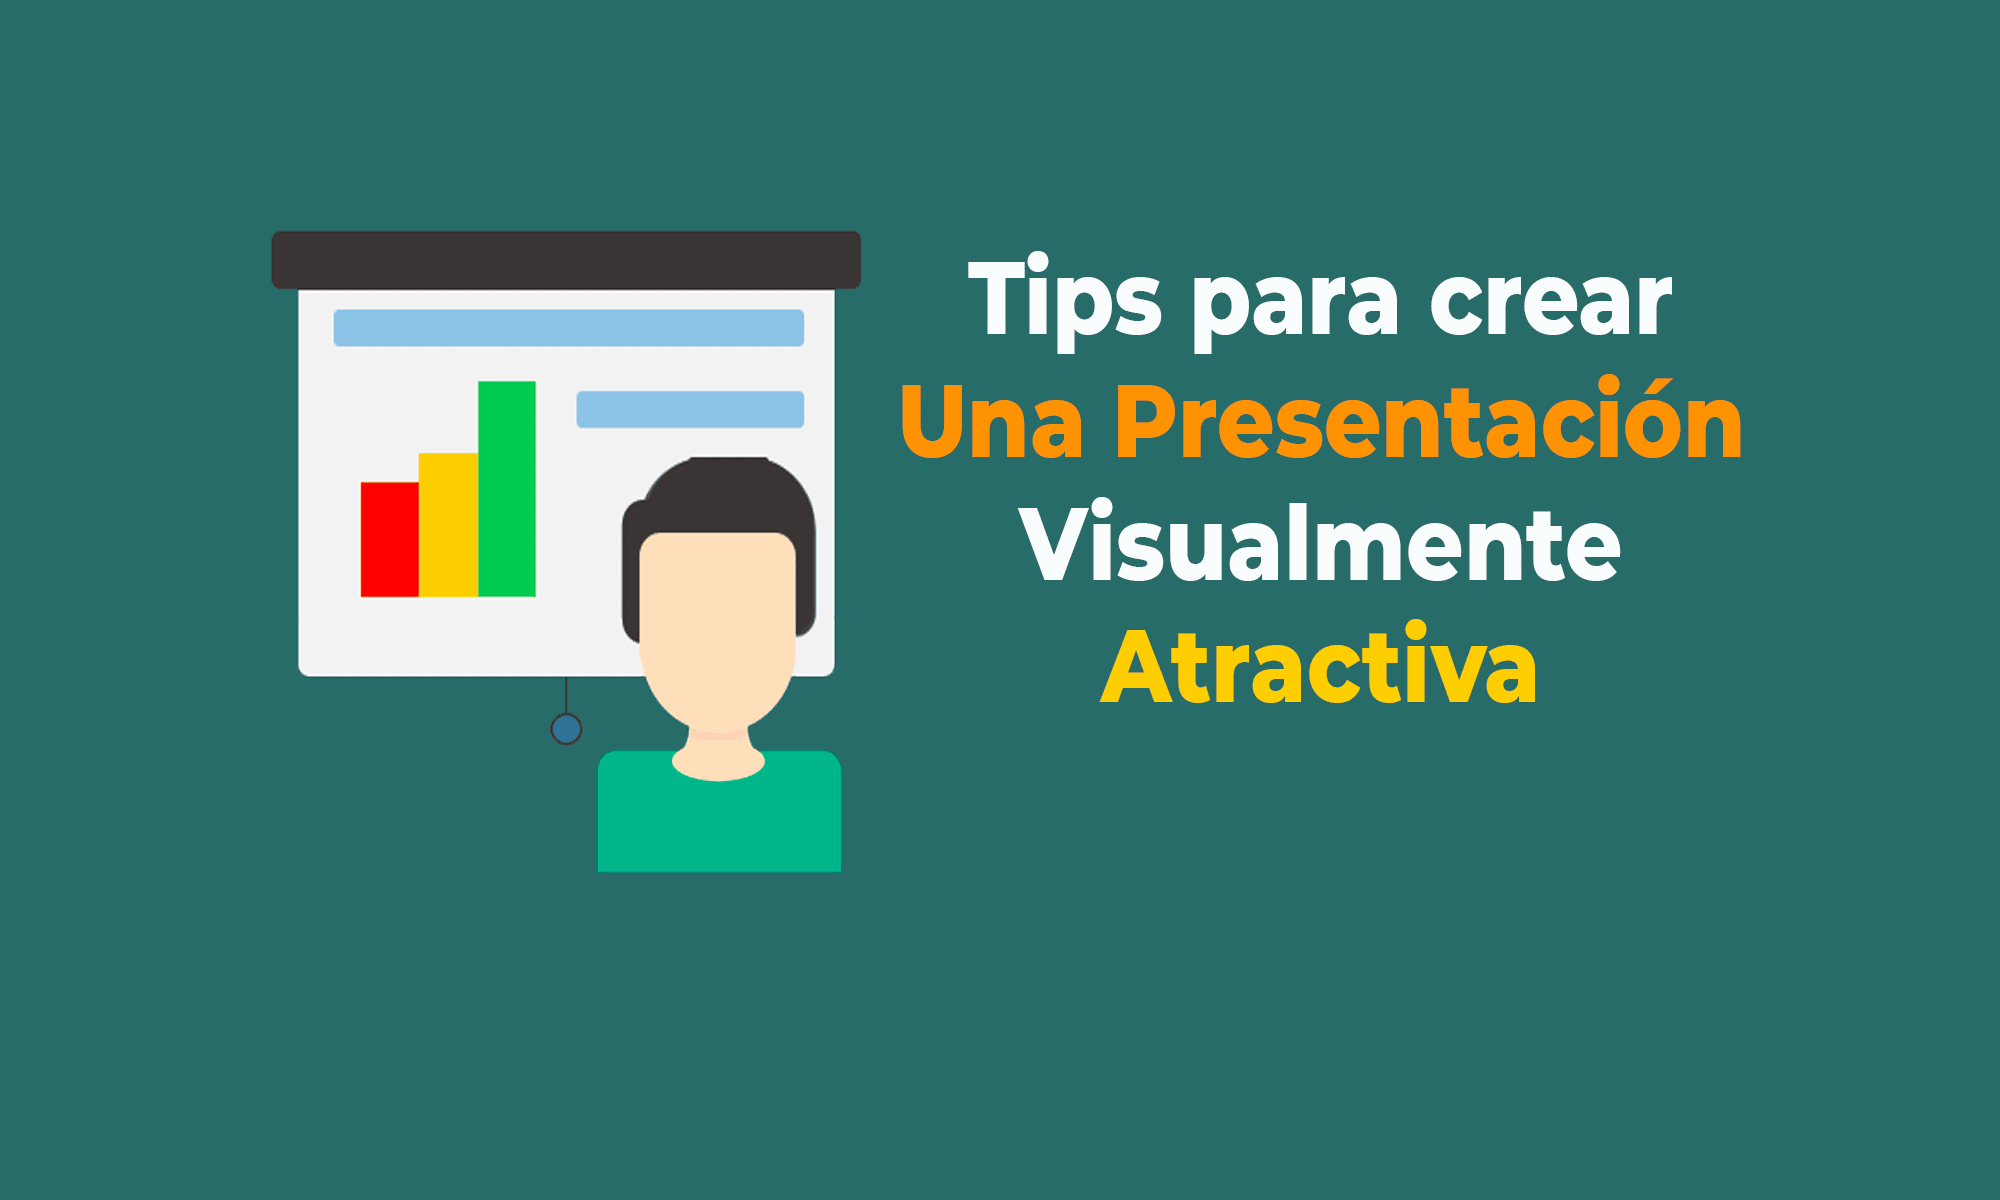 Tips para crear una presentación visualmente atractiva